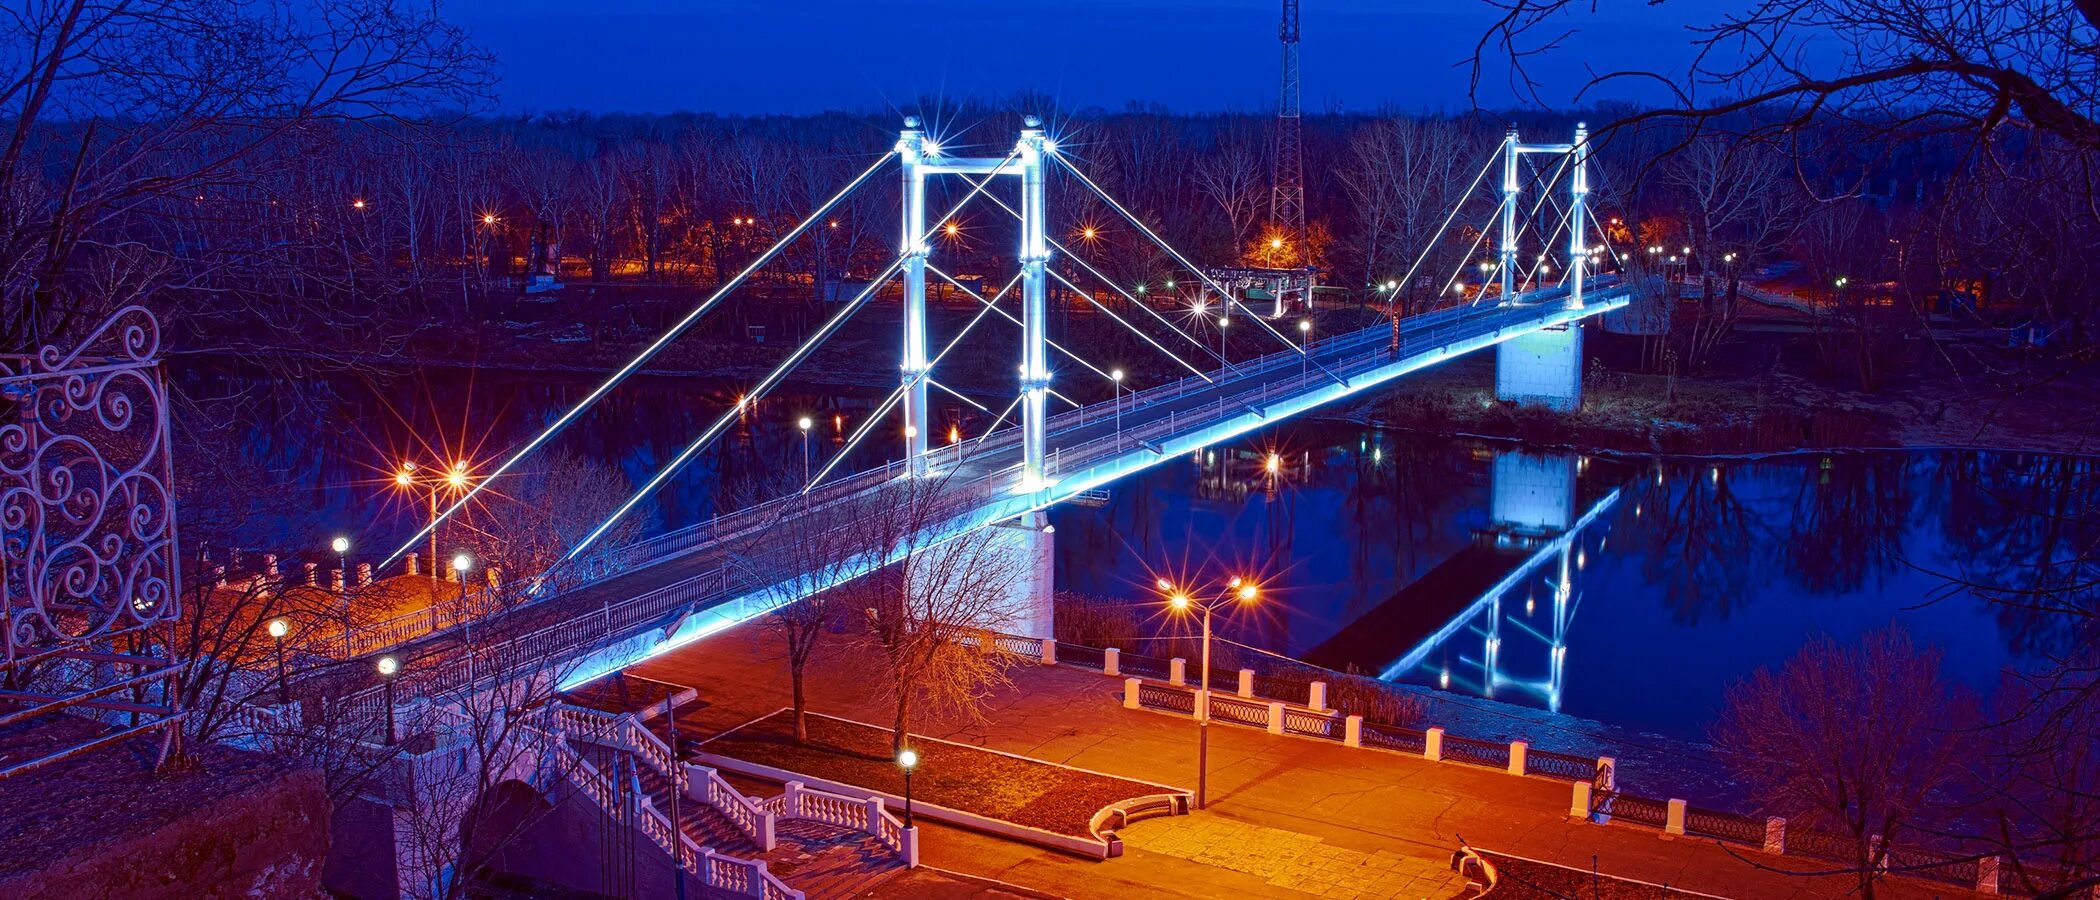 Пешеходный мост Европа-Азия Оренбург. Белый мост Оренбург. Оренбург мост на набережной Европа Азия. Мост через Урал Оренбург Европа Азия.